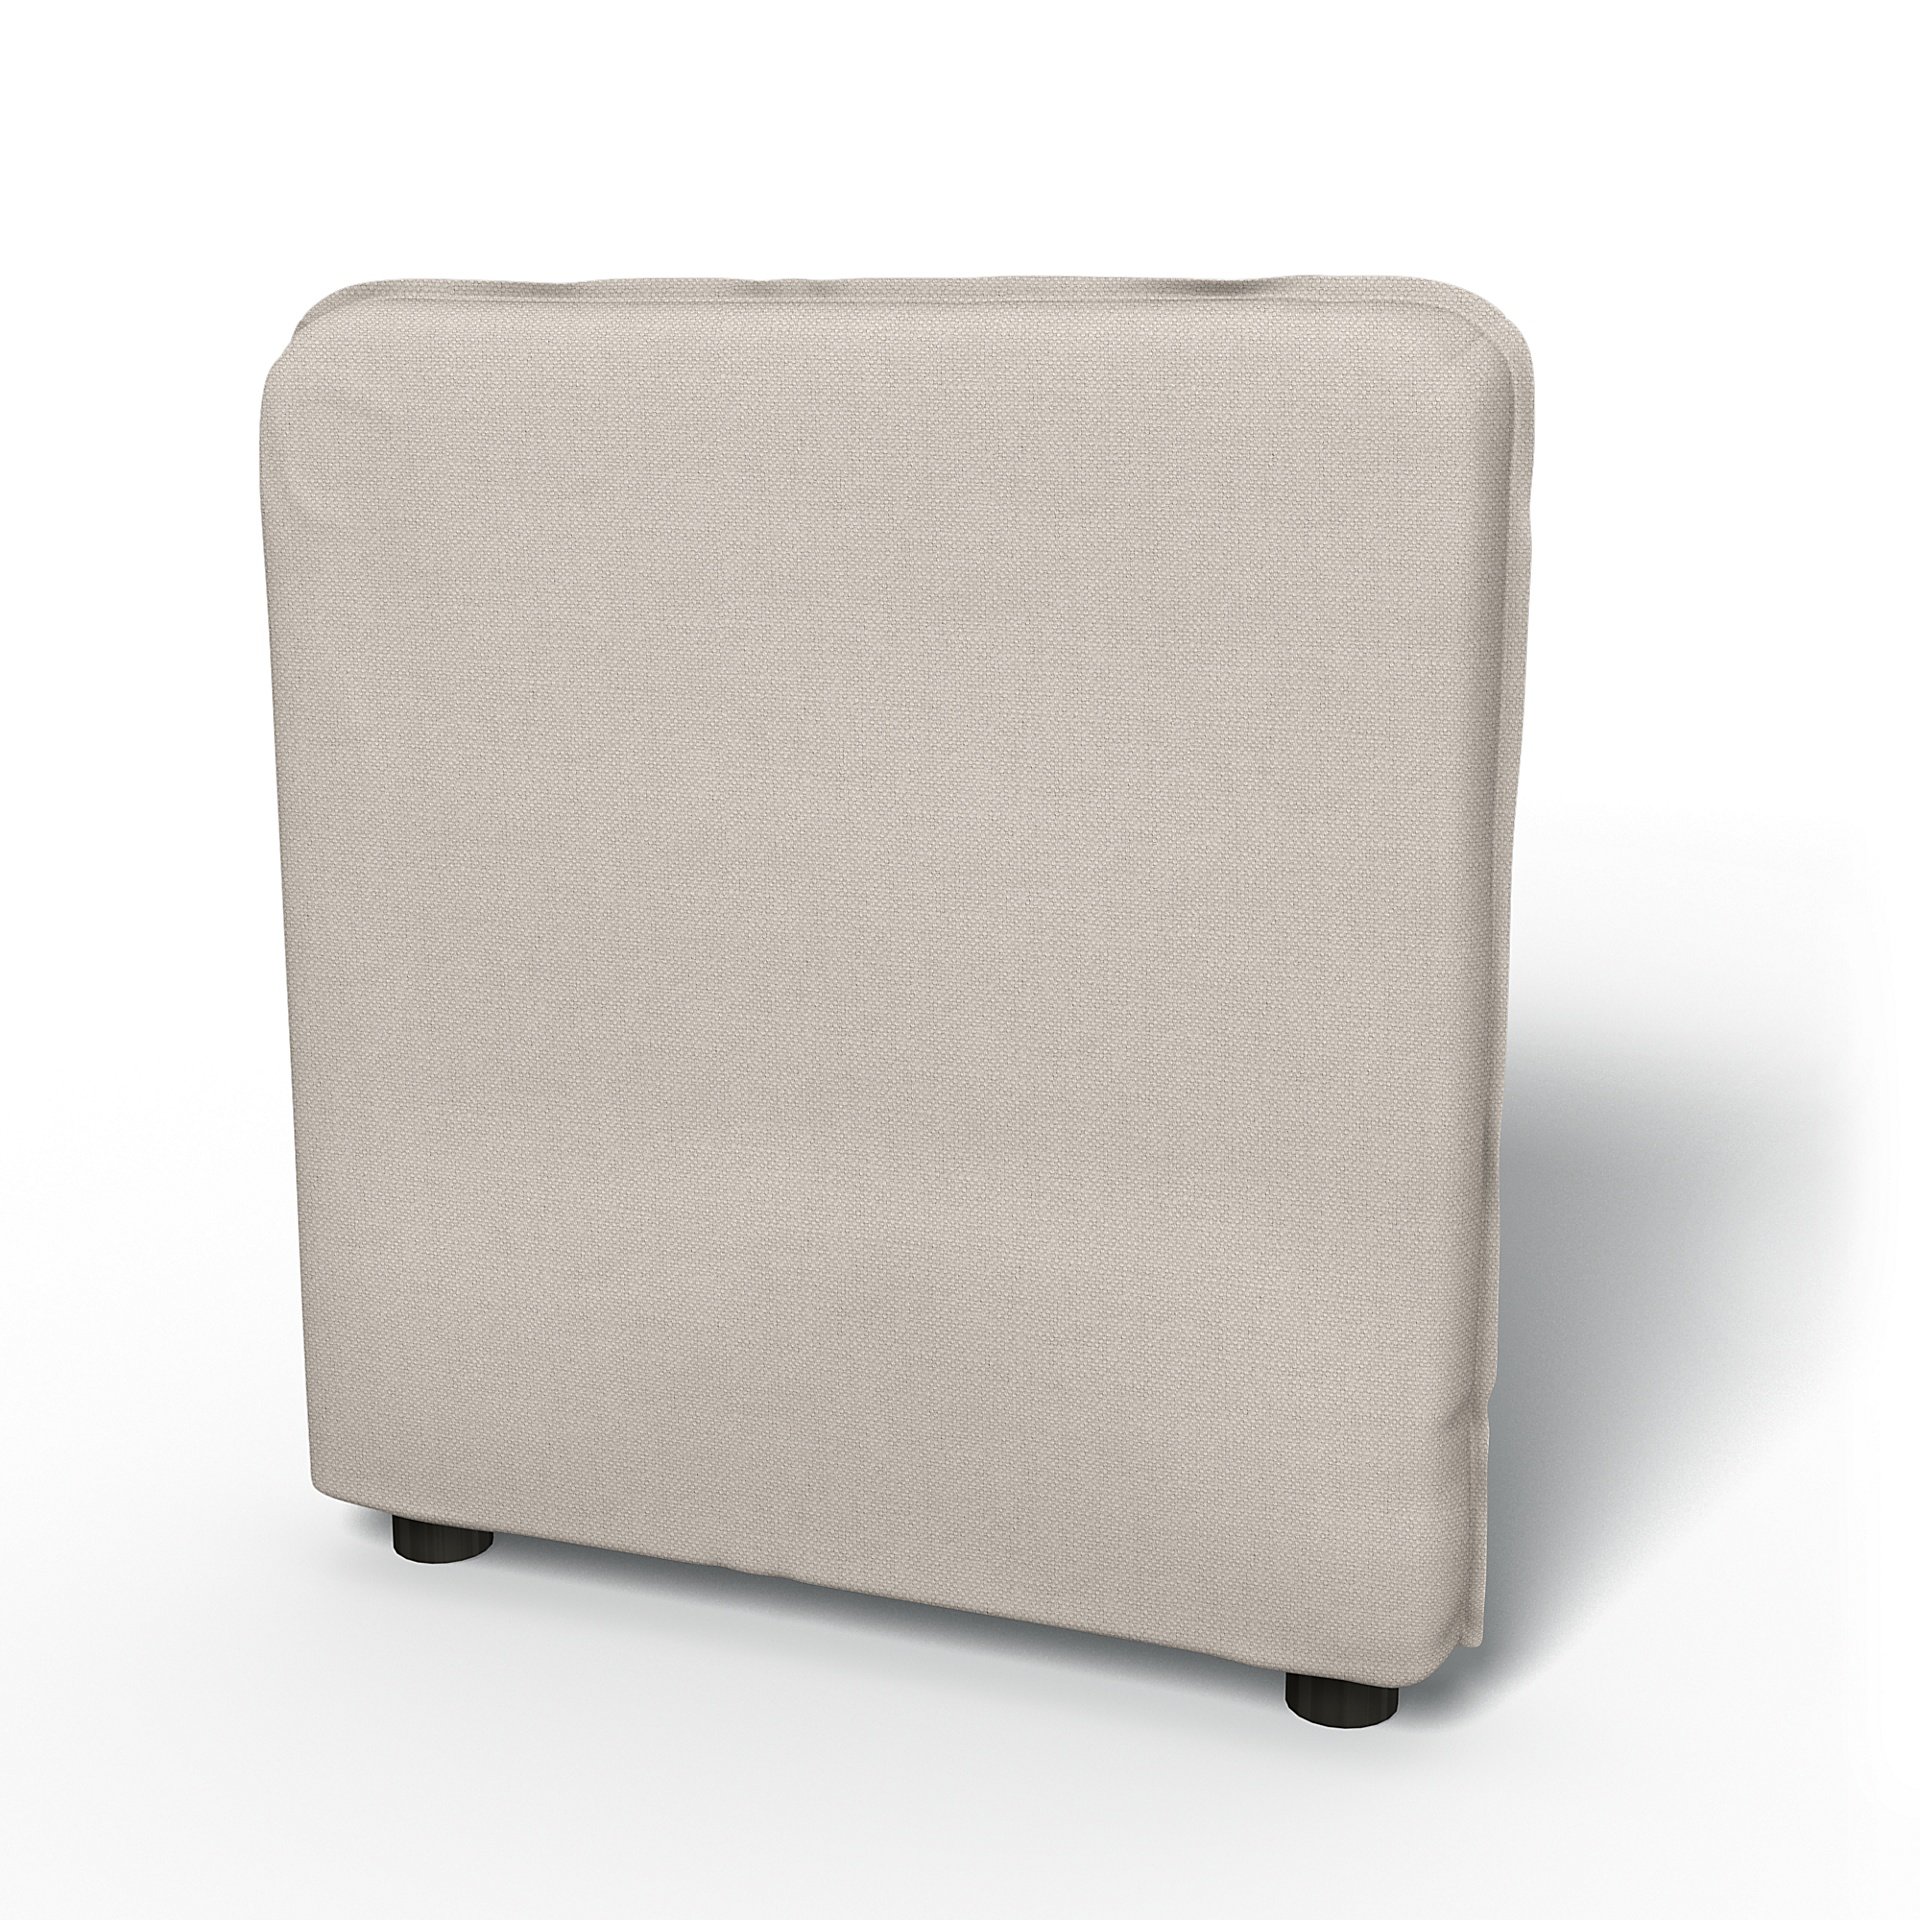 IKEA - Vallentuna Armrest Cover (80x60x13cm), Chalk, Linen - Bemz